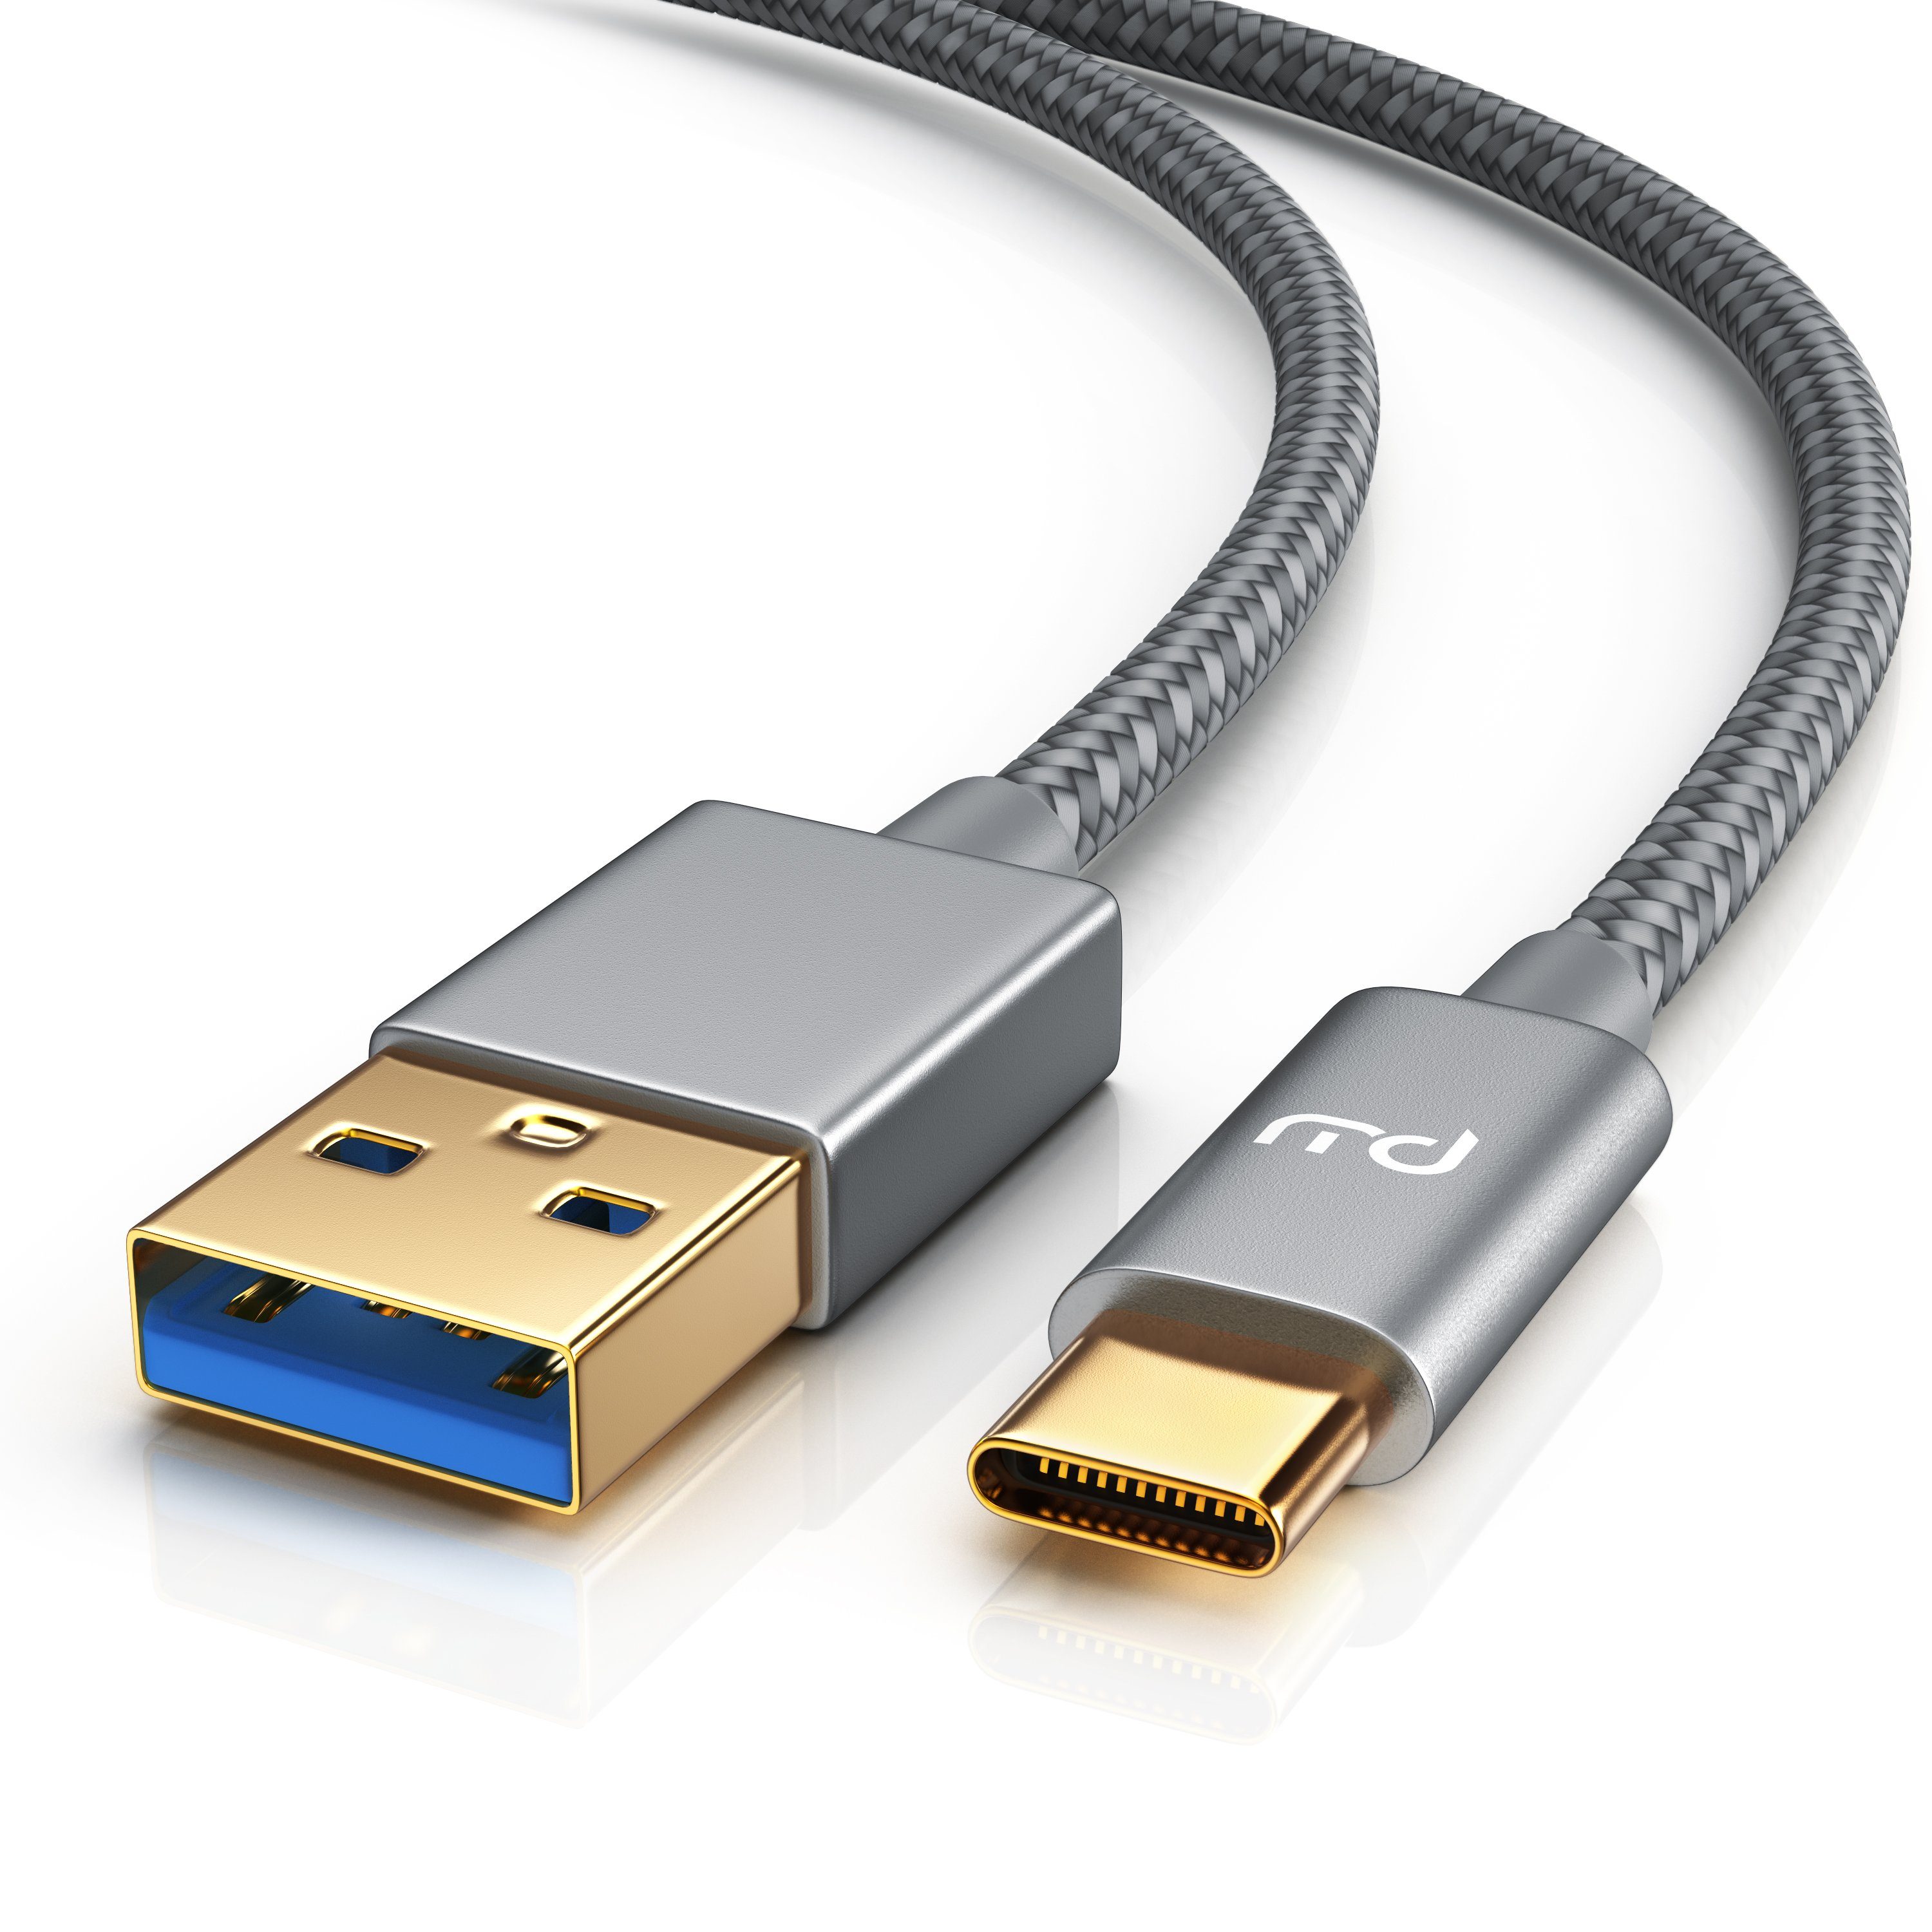 Primewire USB-Kabel, USB Typ C Stecker; USB 3.0 Typ A Stecker (200 cm),  Premium USB 3.1 Ladekabel - Datenkabel - Nylonmantel - 3-Fach geschirmt -  bidirektional online kaufen | OTTO